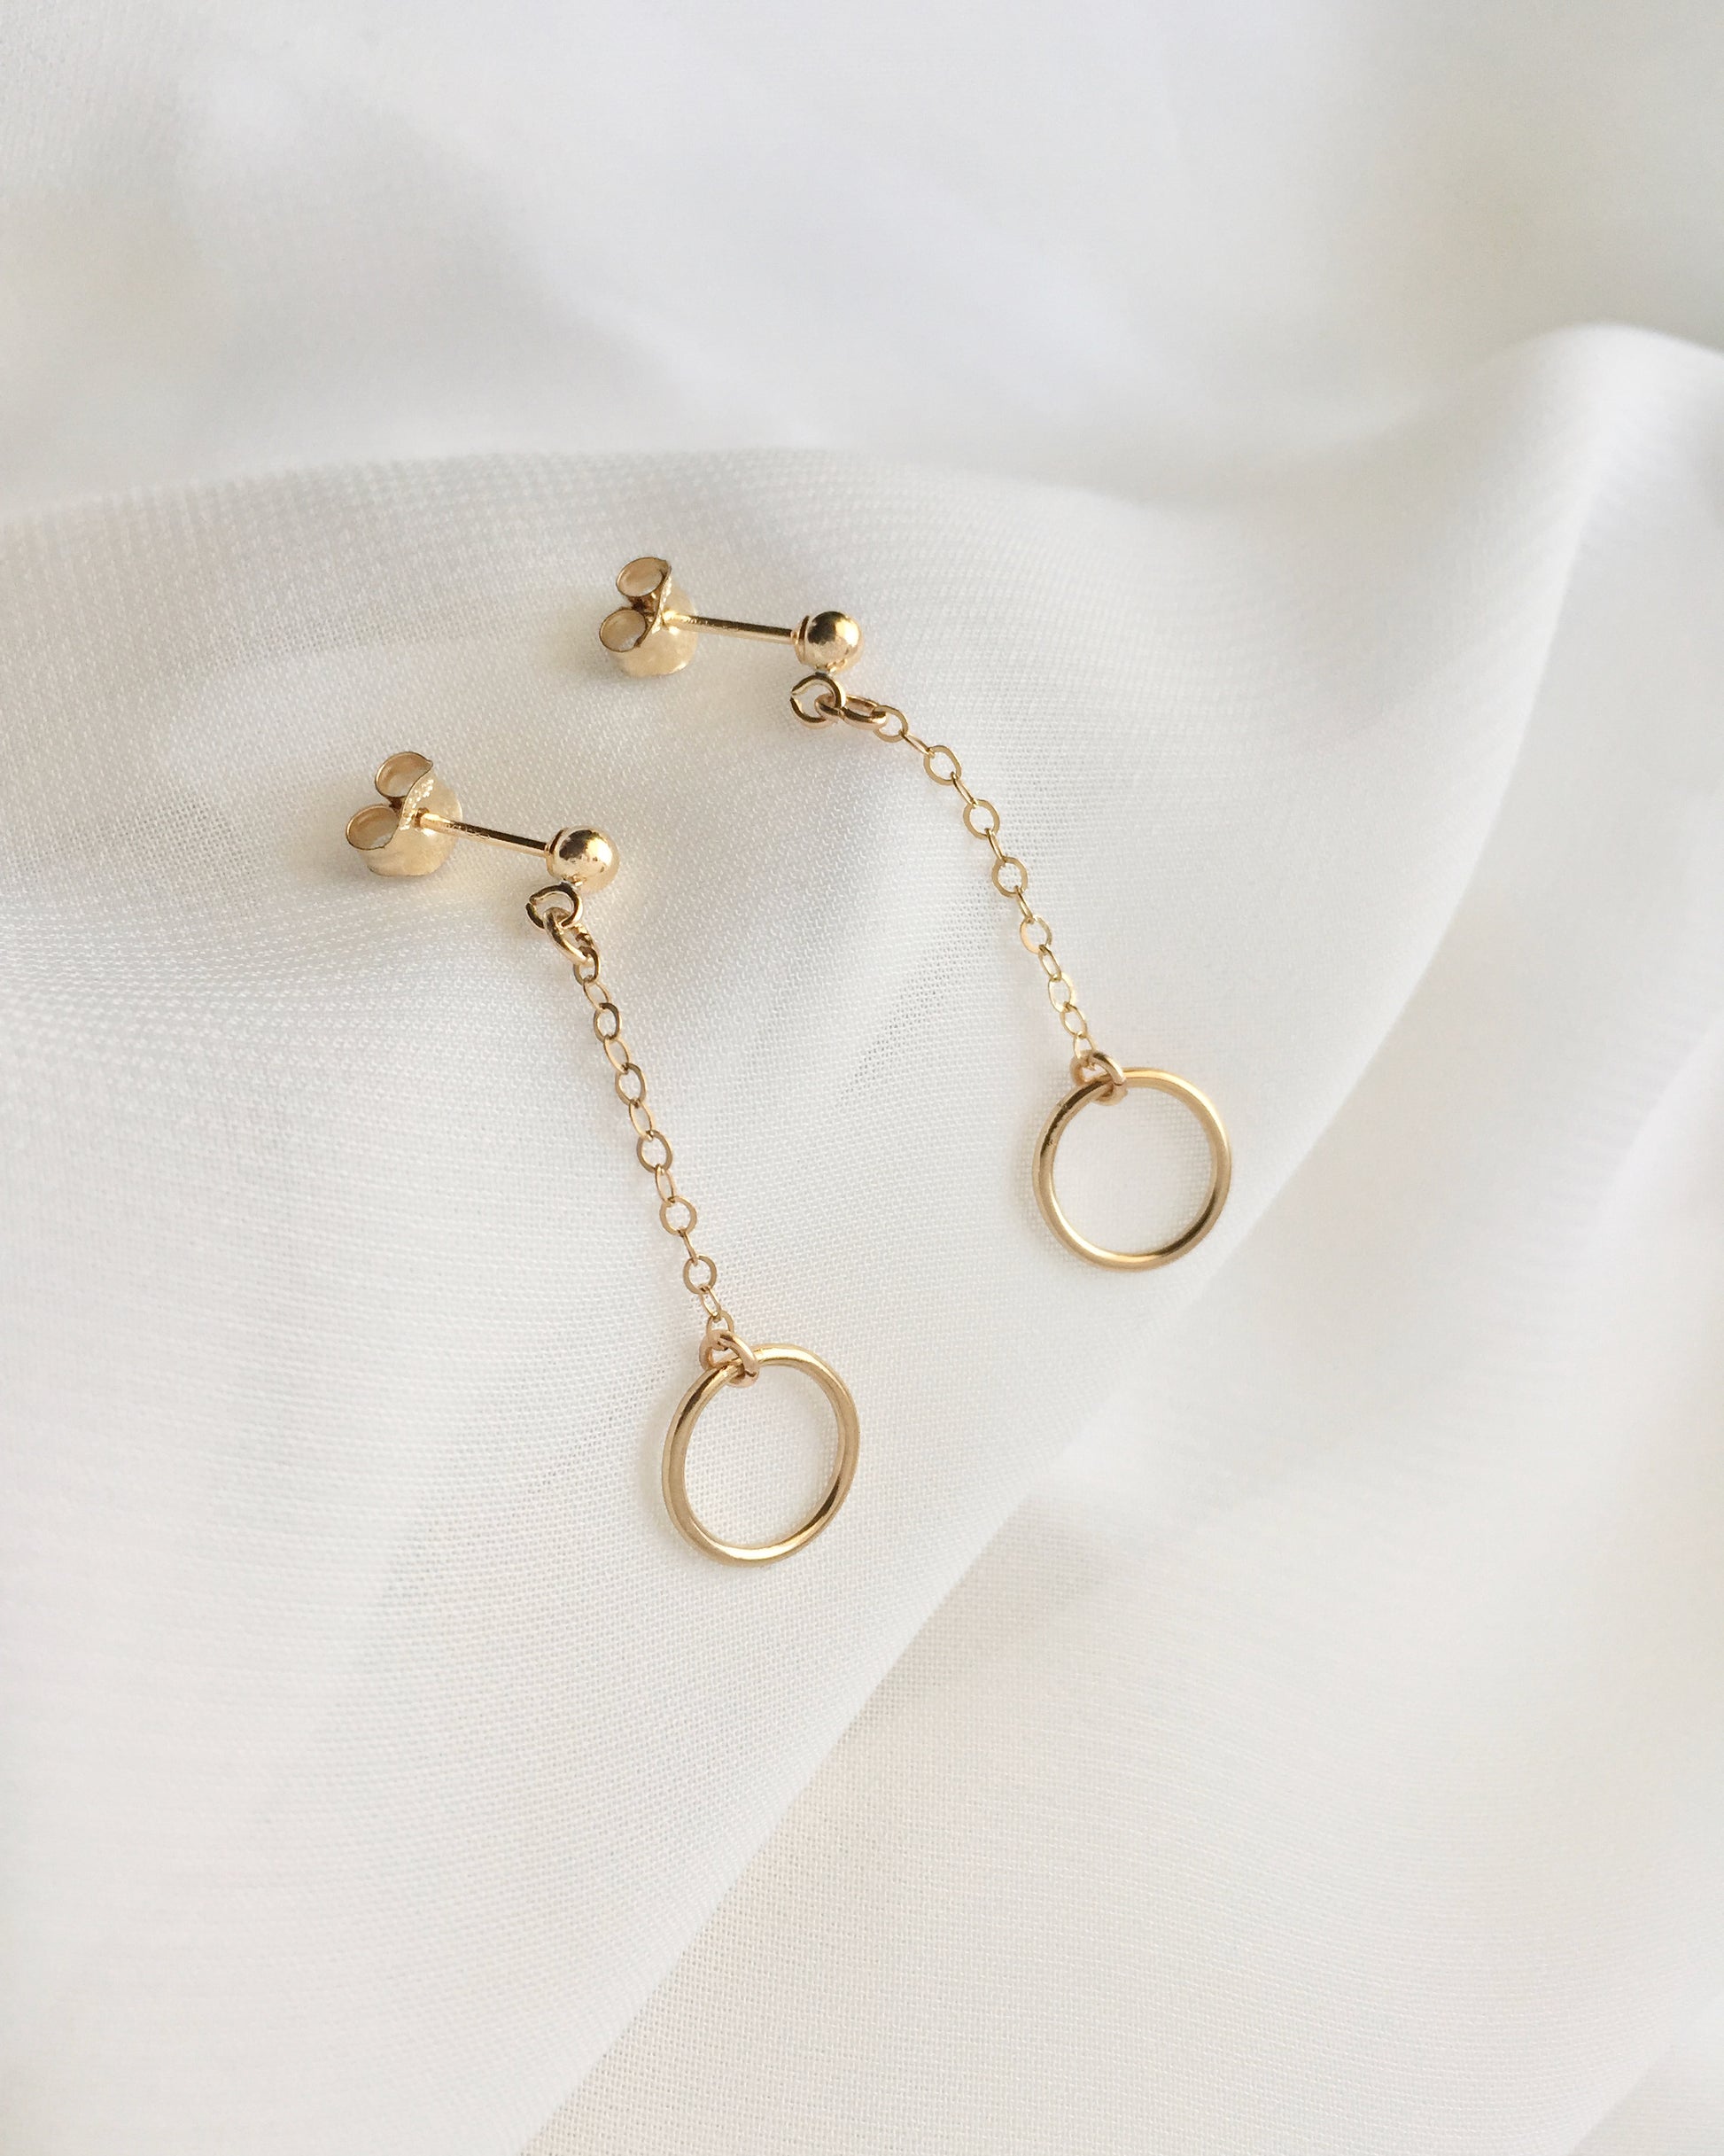 Dainty Open Circle Dangle Earrings | Simple Everyday Earrings | IB Jewelry